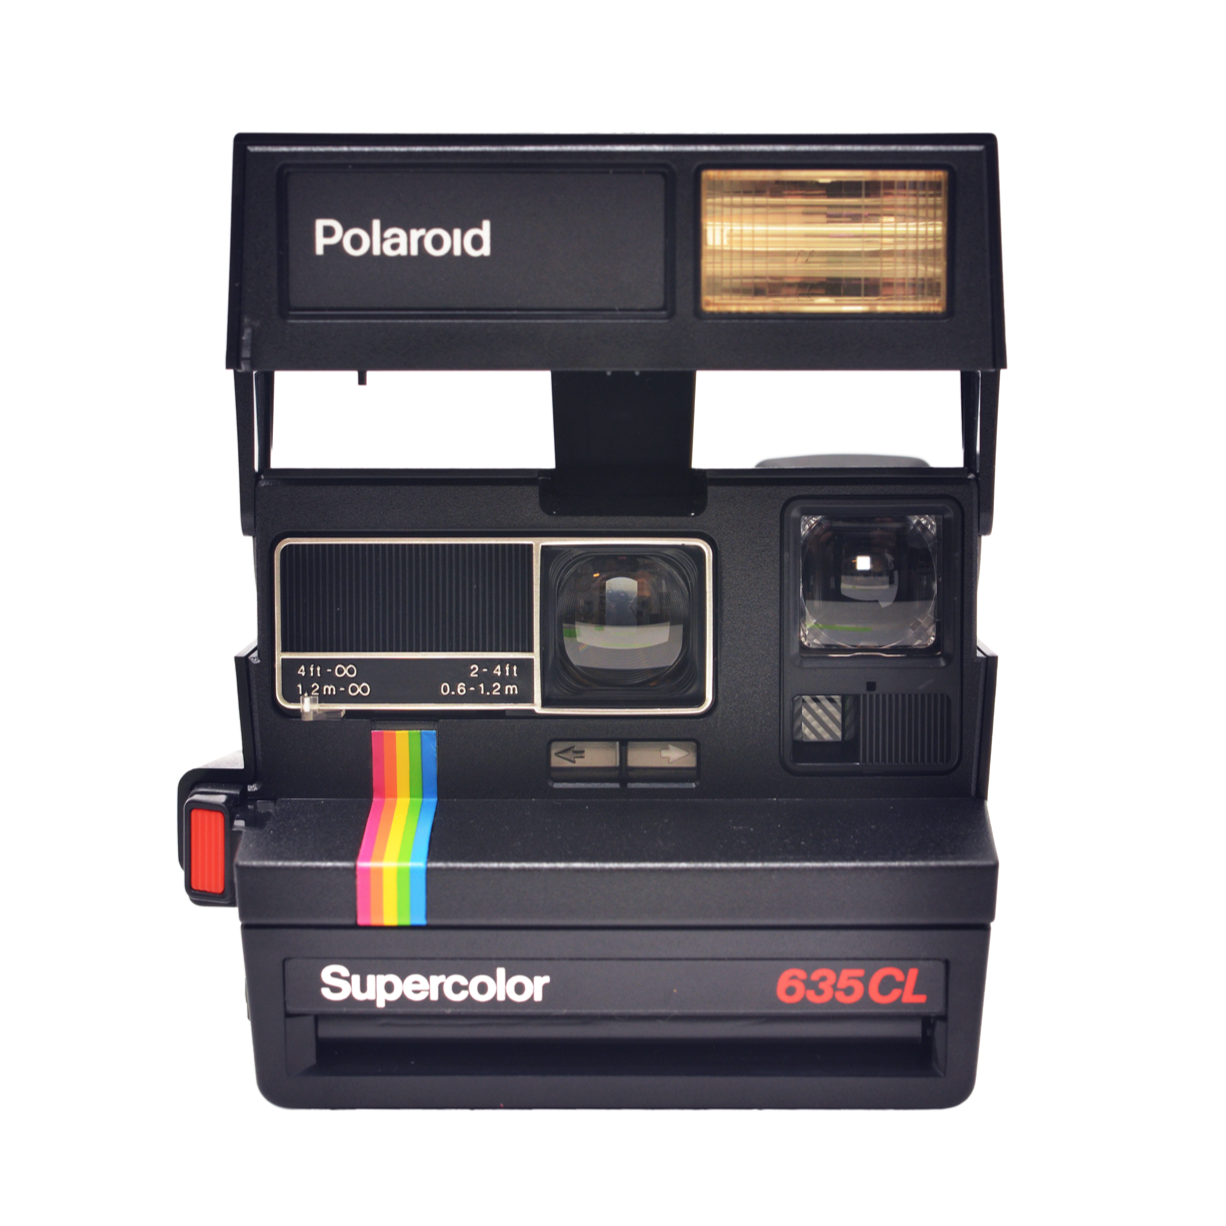 Polaroid Supercolor 635 CL remis à neuf